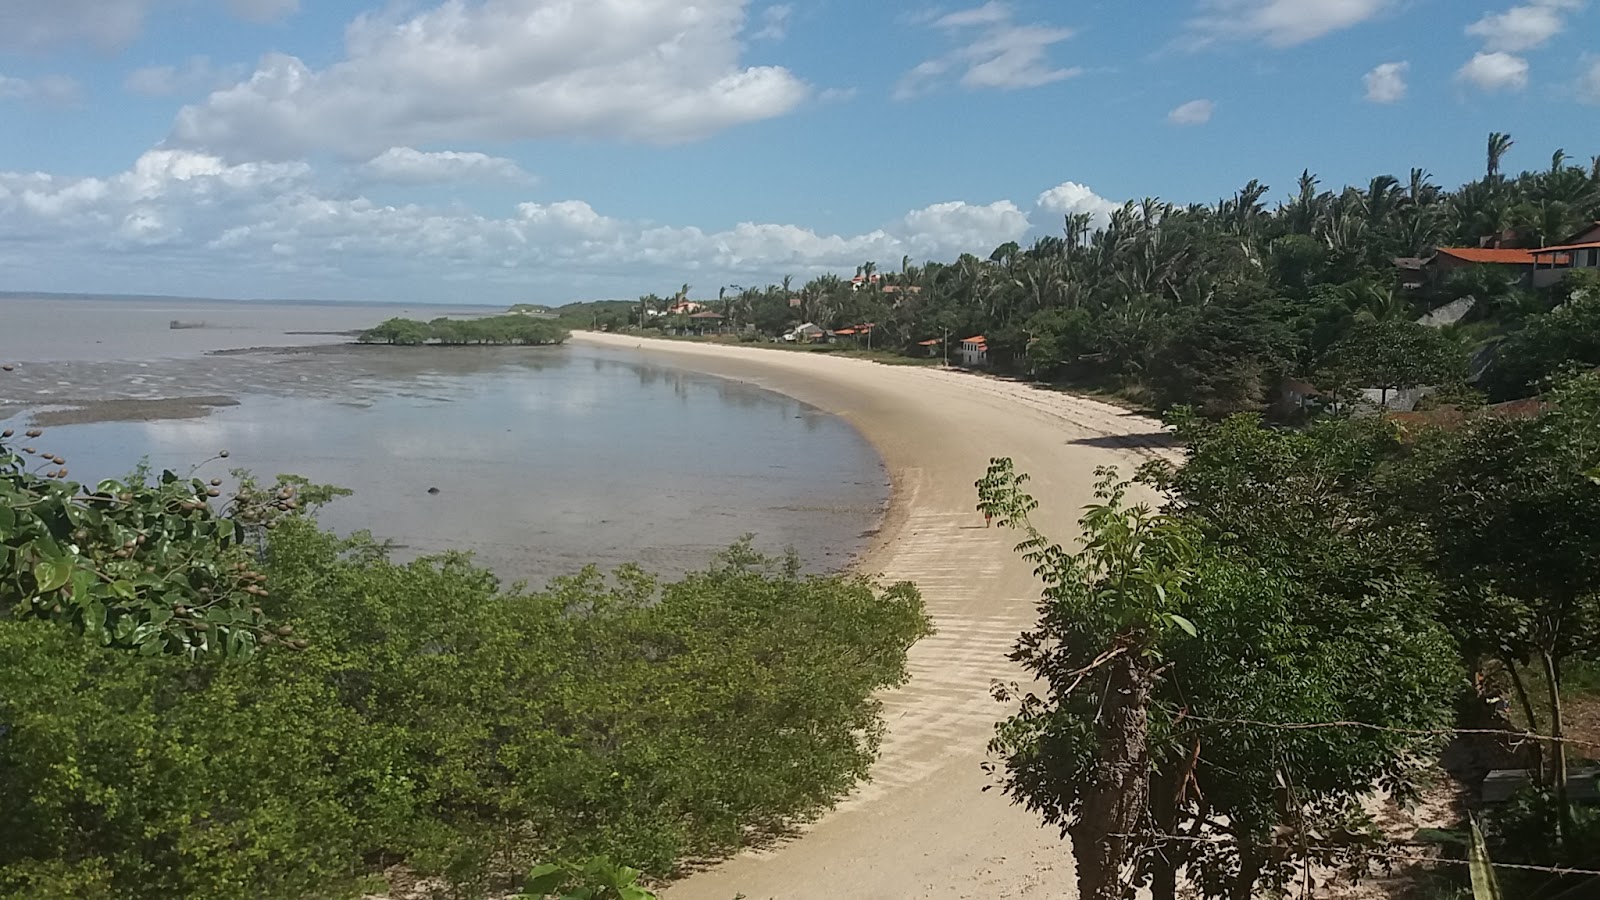 Fotografie cu Praia de Jucatuba cu o suprafață de nisip strălucitor